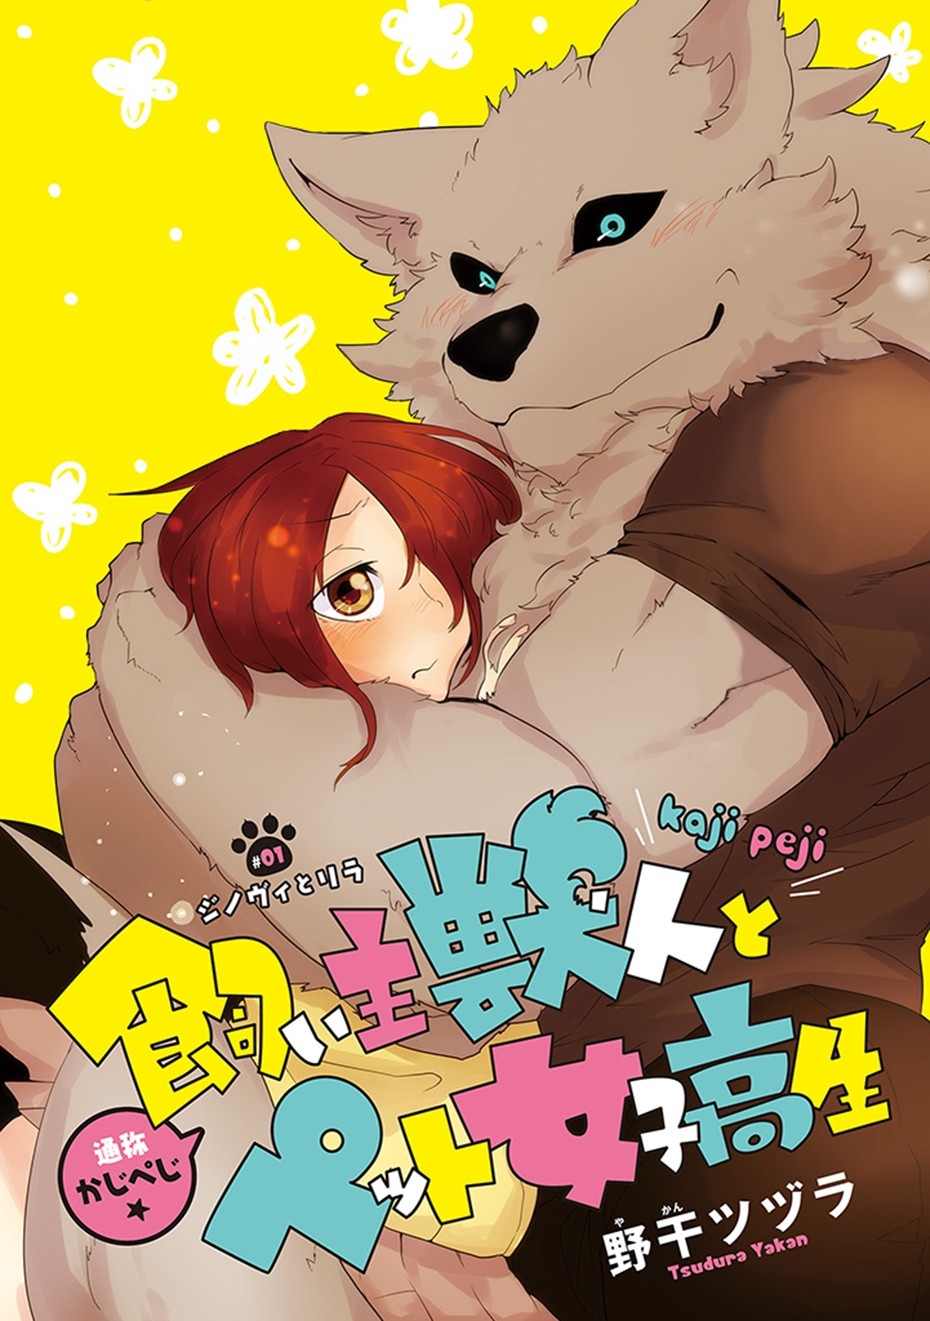 [Yakantuzura] The Beast and His Pet High School Girl Redux cap01 [Spanish] [Naru42] 0